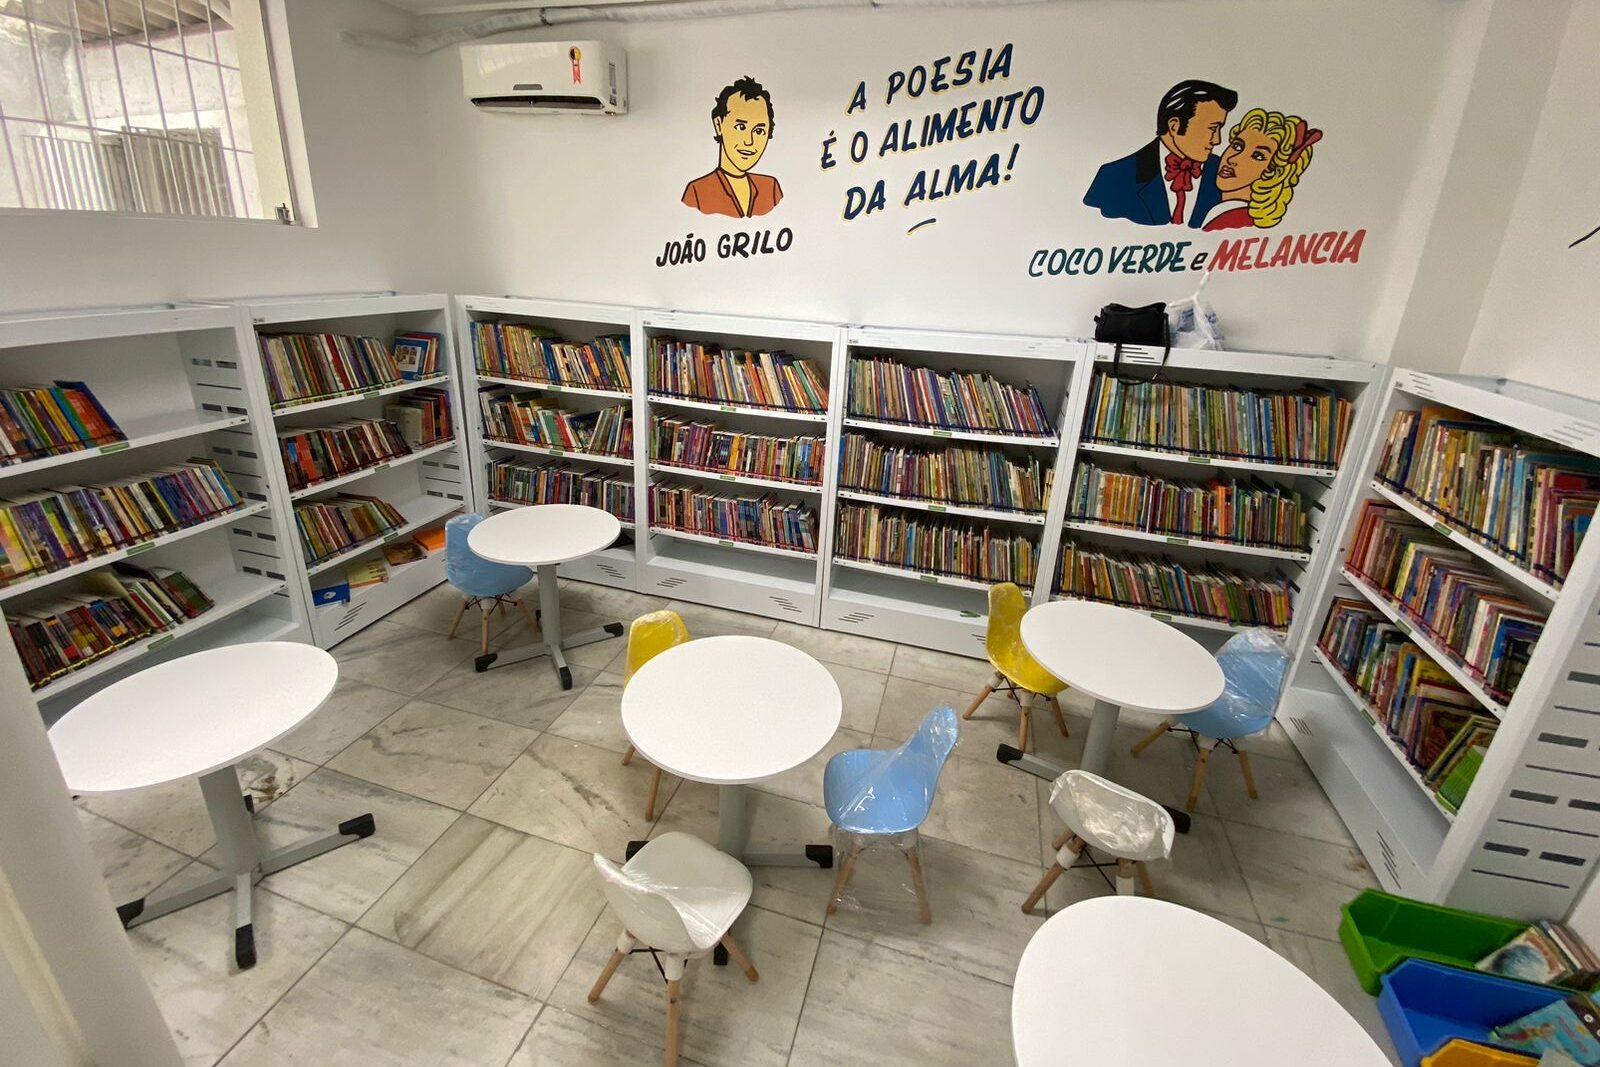  Reinauguração da Biblioteca Municipal Álvaro Lins representa marco cultural em Caruaru